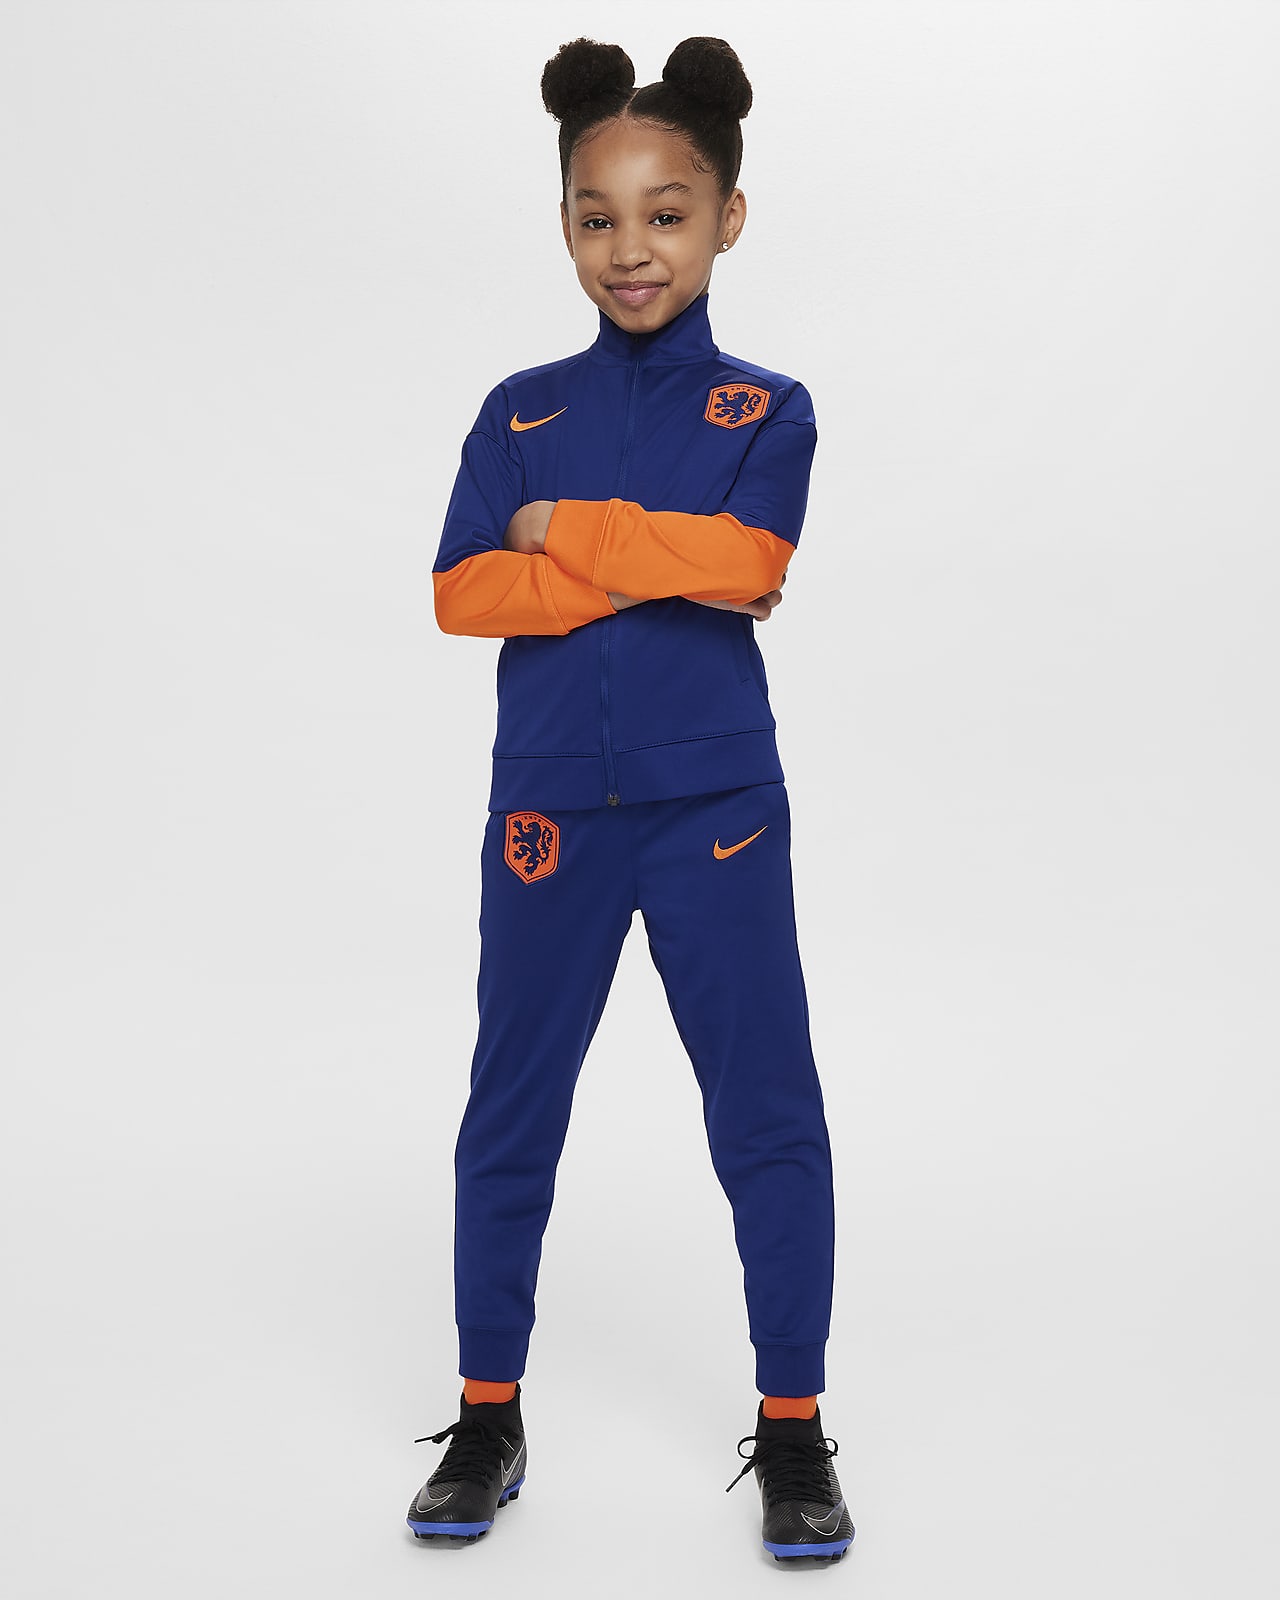 Nederland Strike Nike Dri-FIT strikket fotballtracksuit til små barn